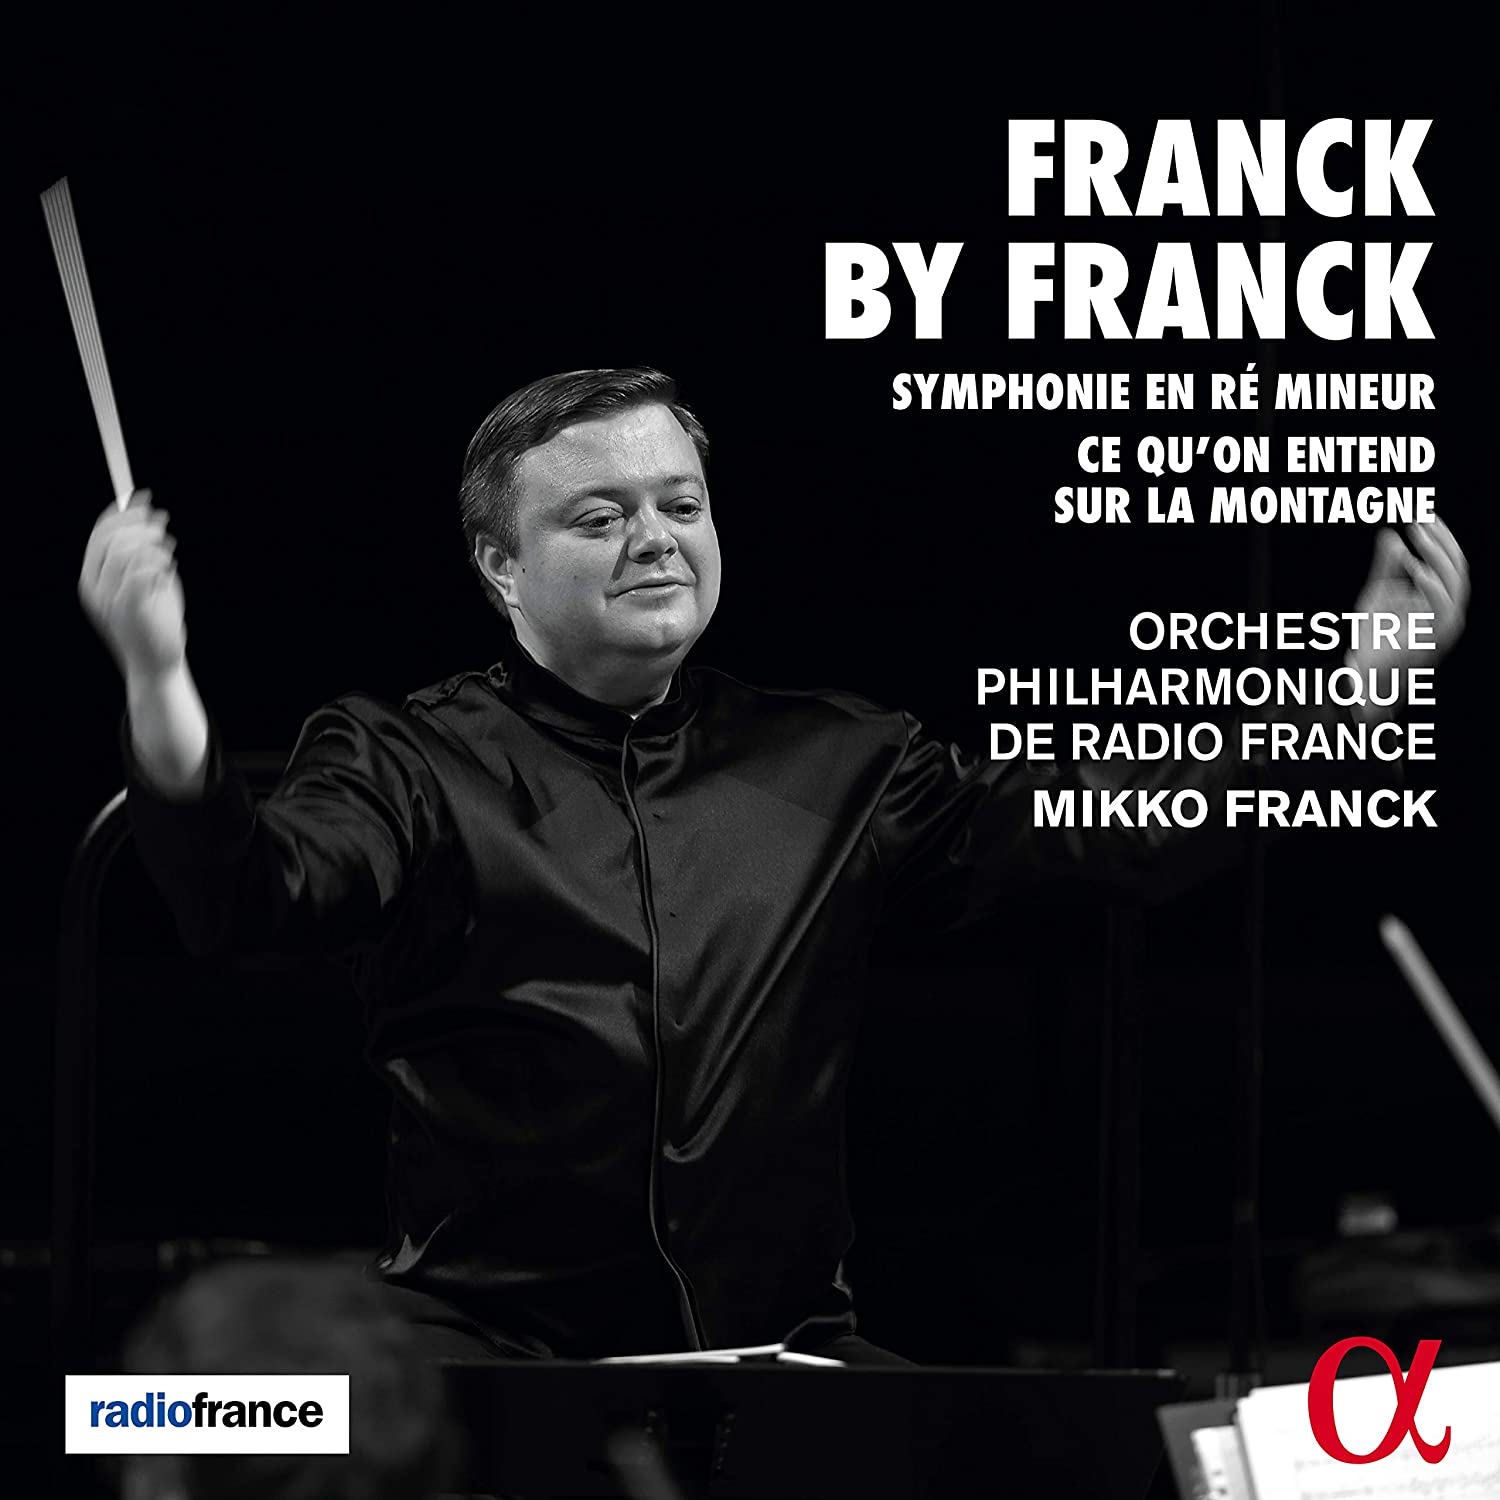 Franck Mikko Franck